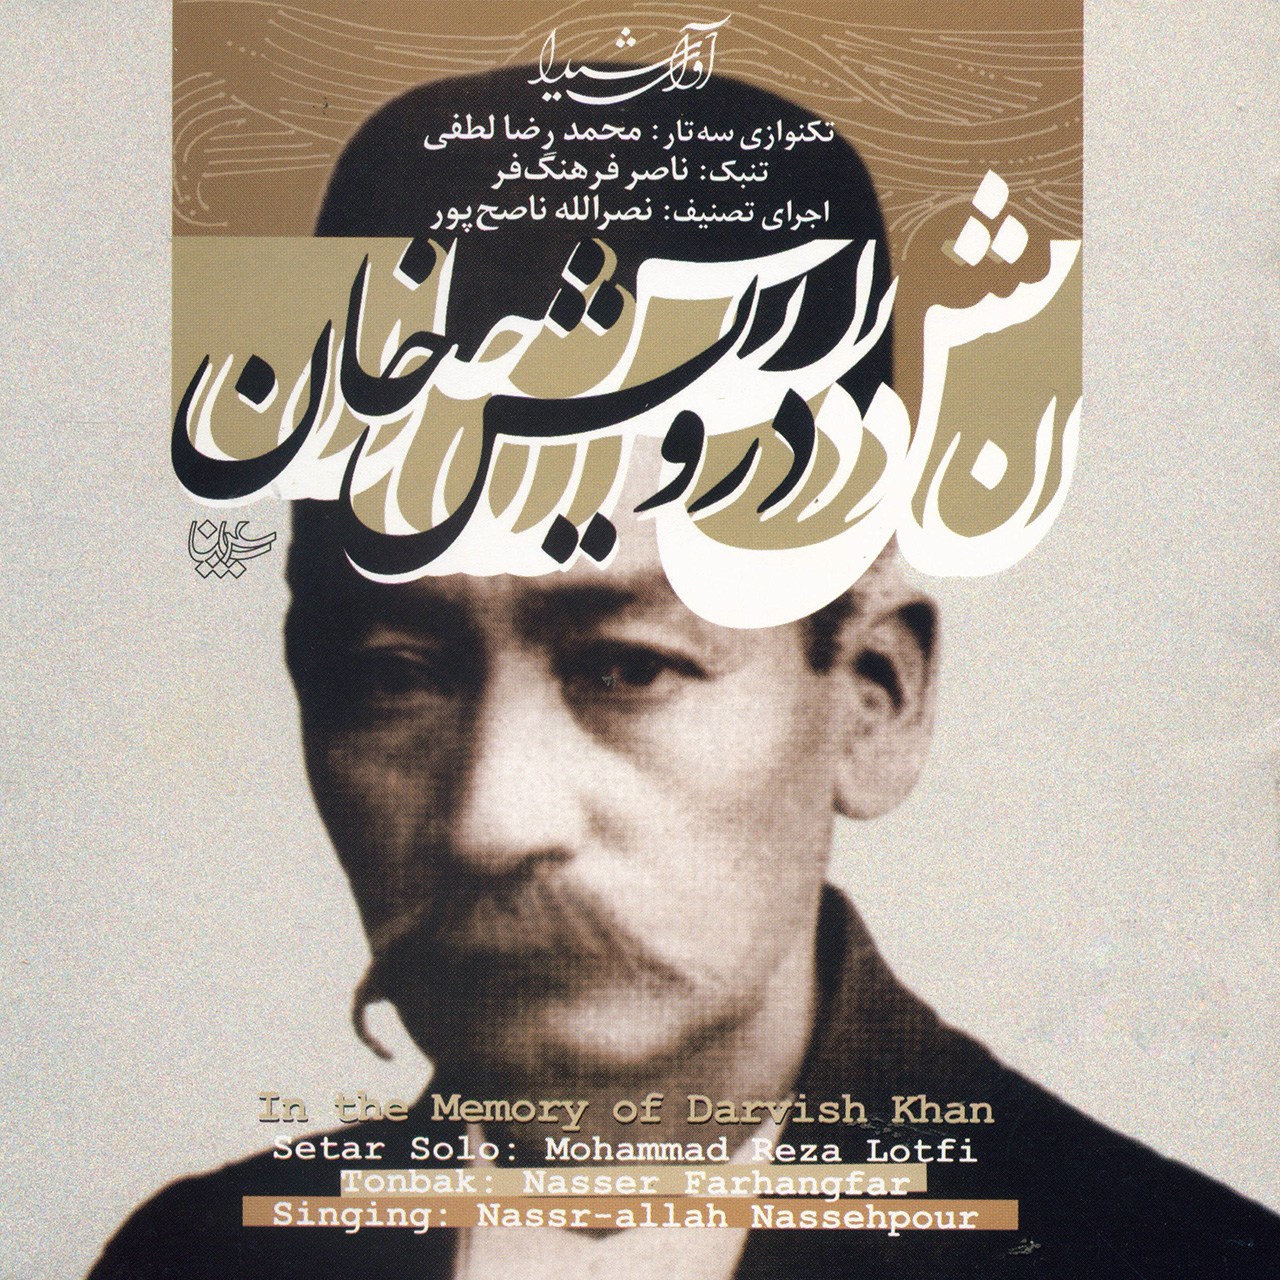 آلبوم موسیقی به یاد درویش خان اثر محمدرضا لطفی